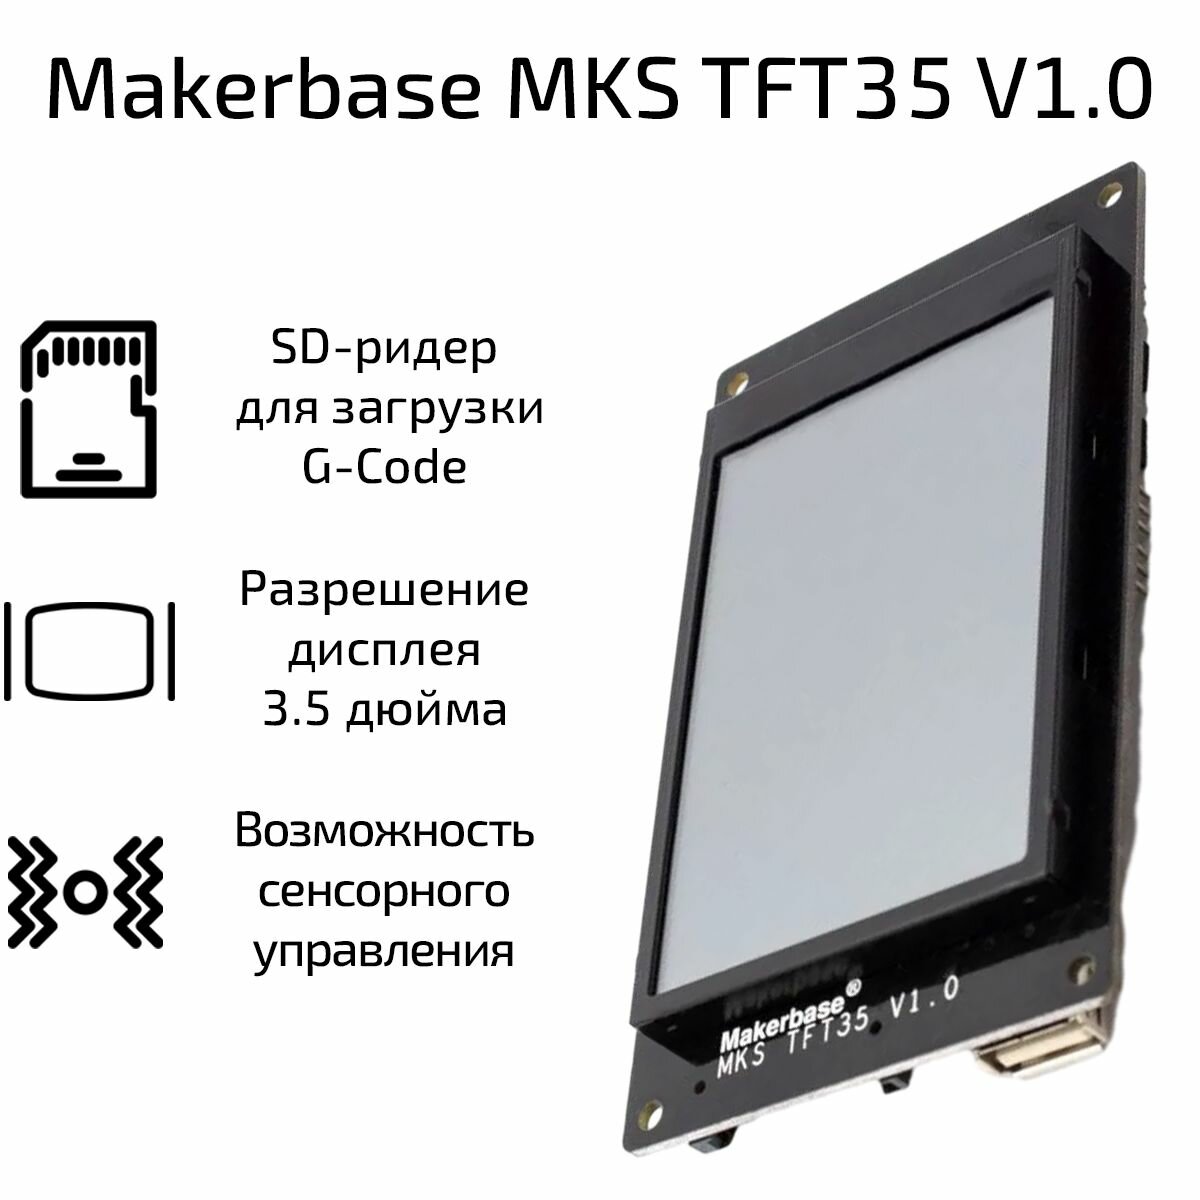 Дисплей сенсорный Makerbase MKS TFT35 V1.0